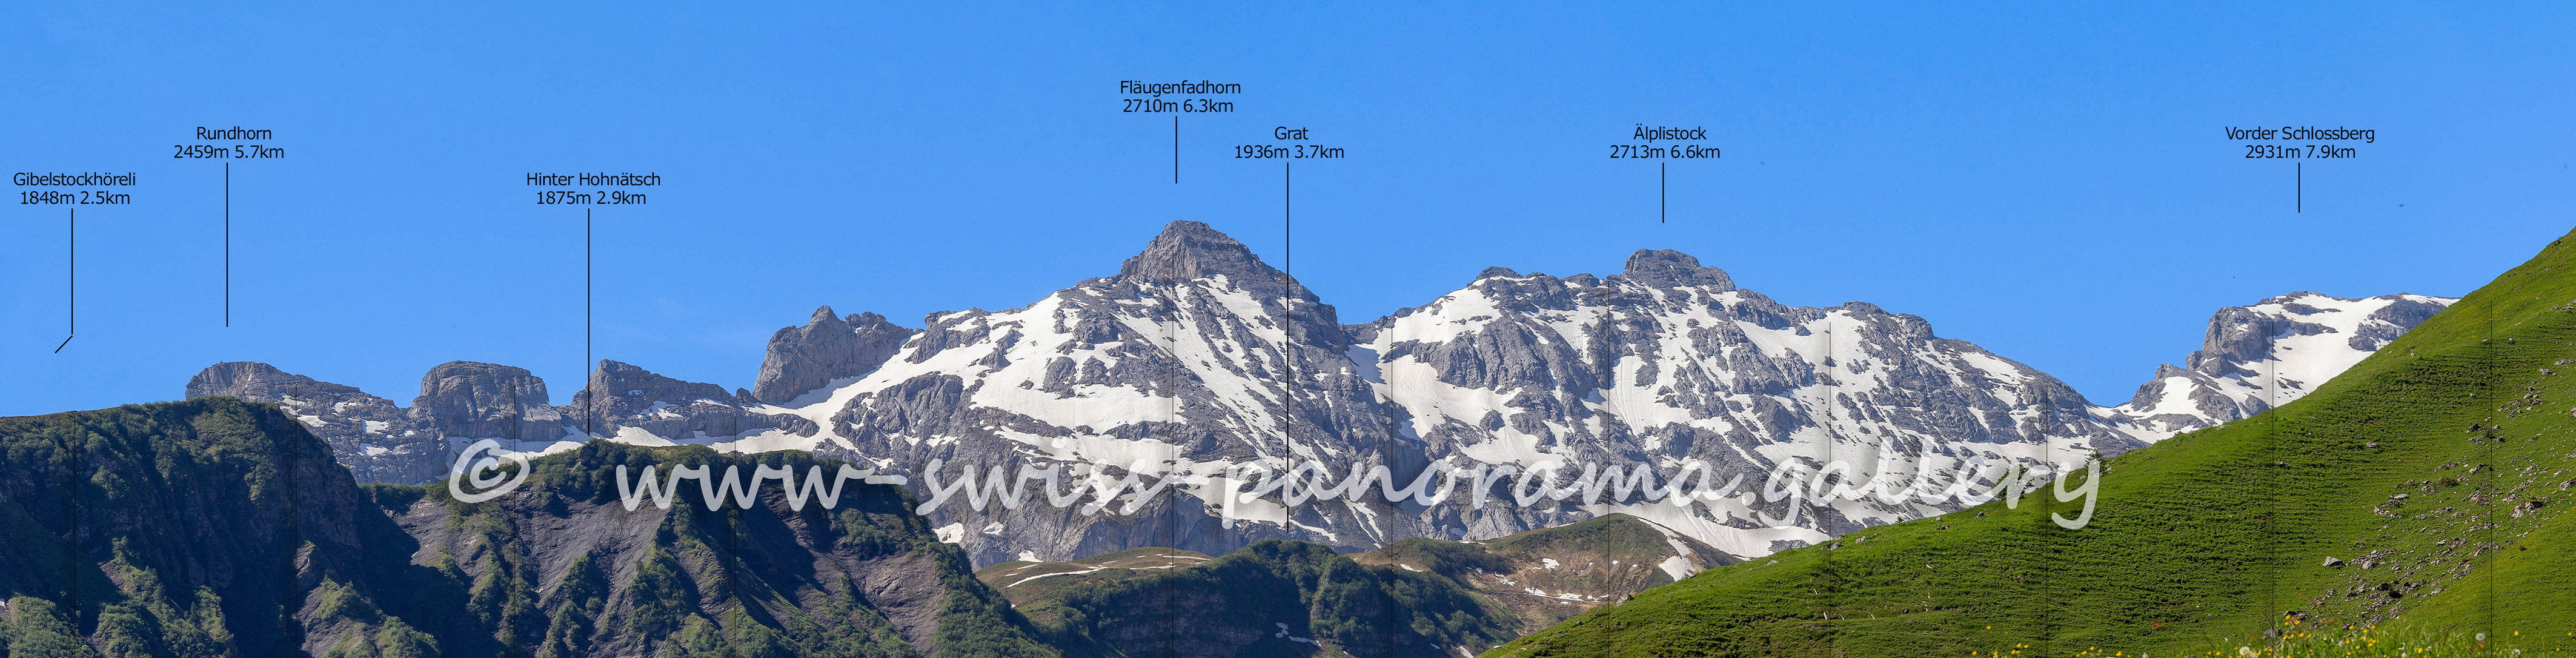 Bergpanorama von Gitschenberg zu Fläugenfadhorn, Älplistock und Vorder Schlossberg